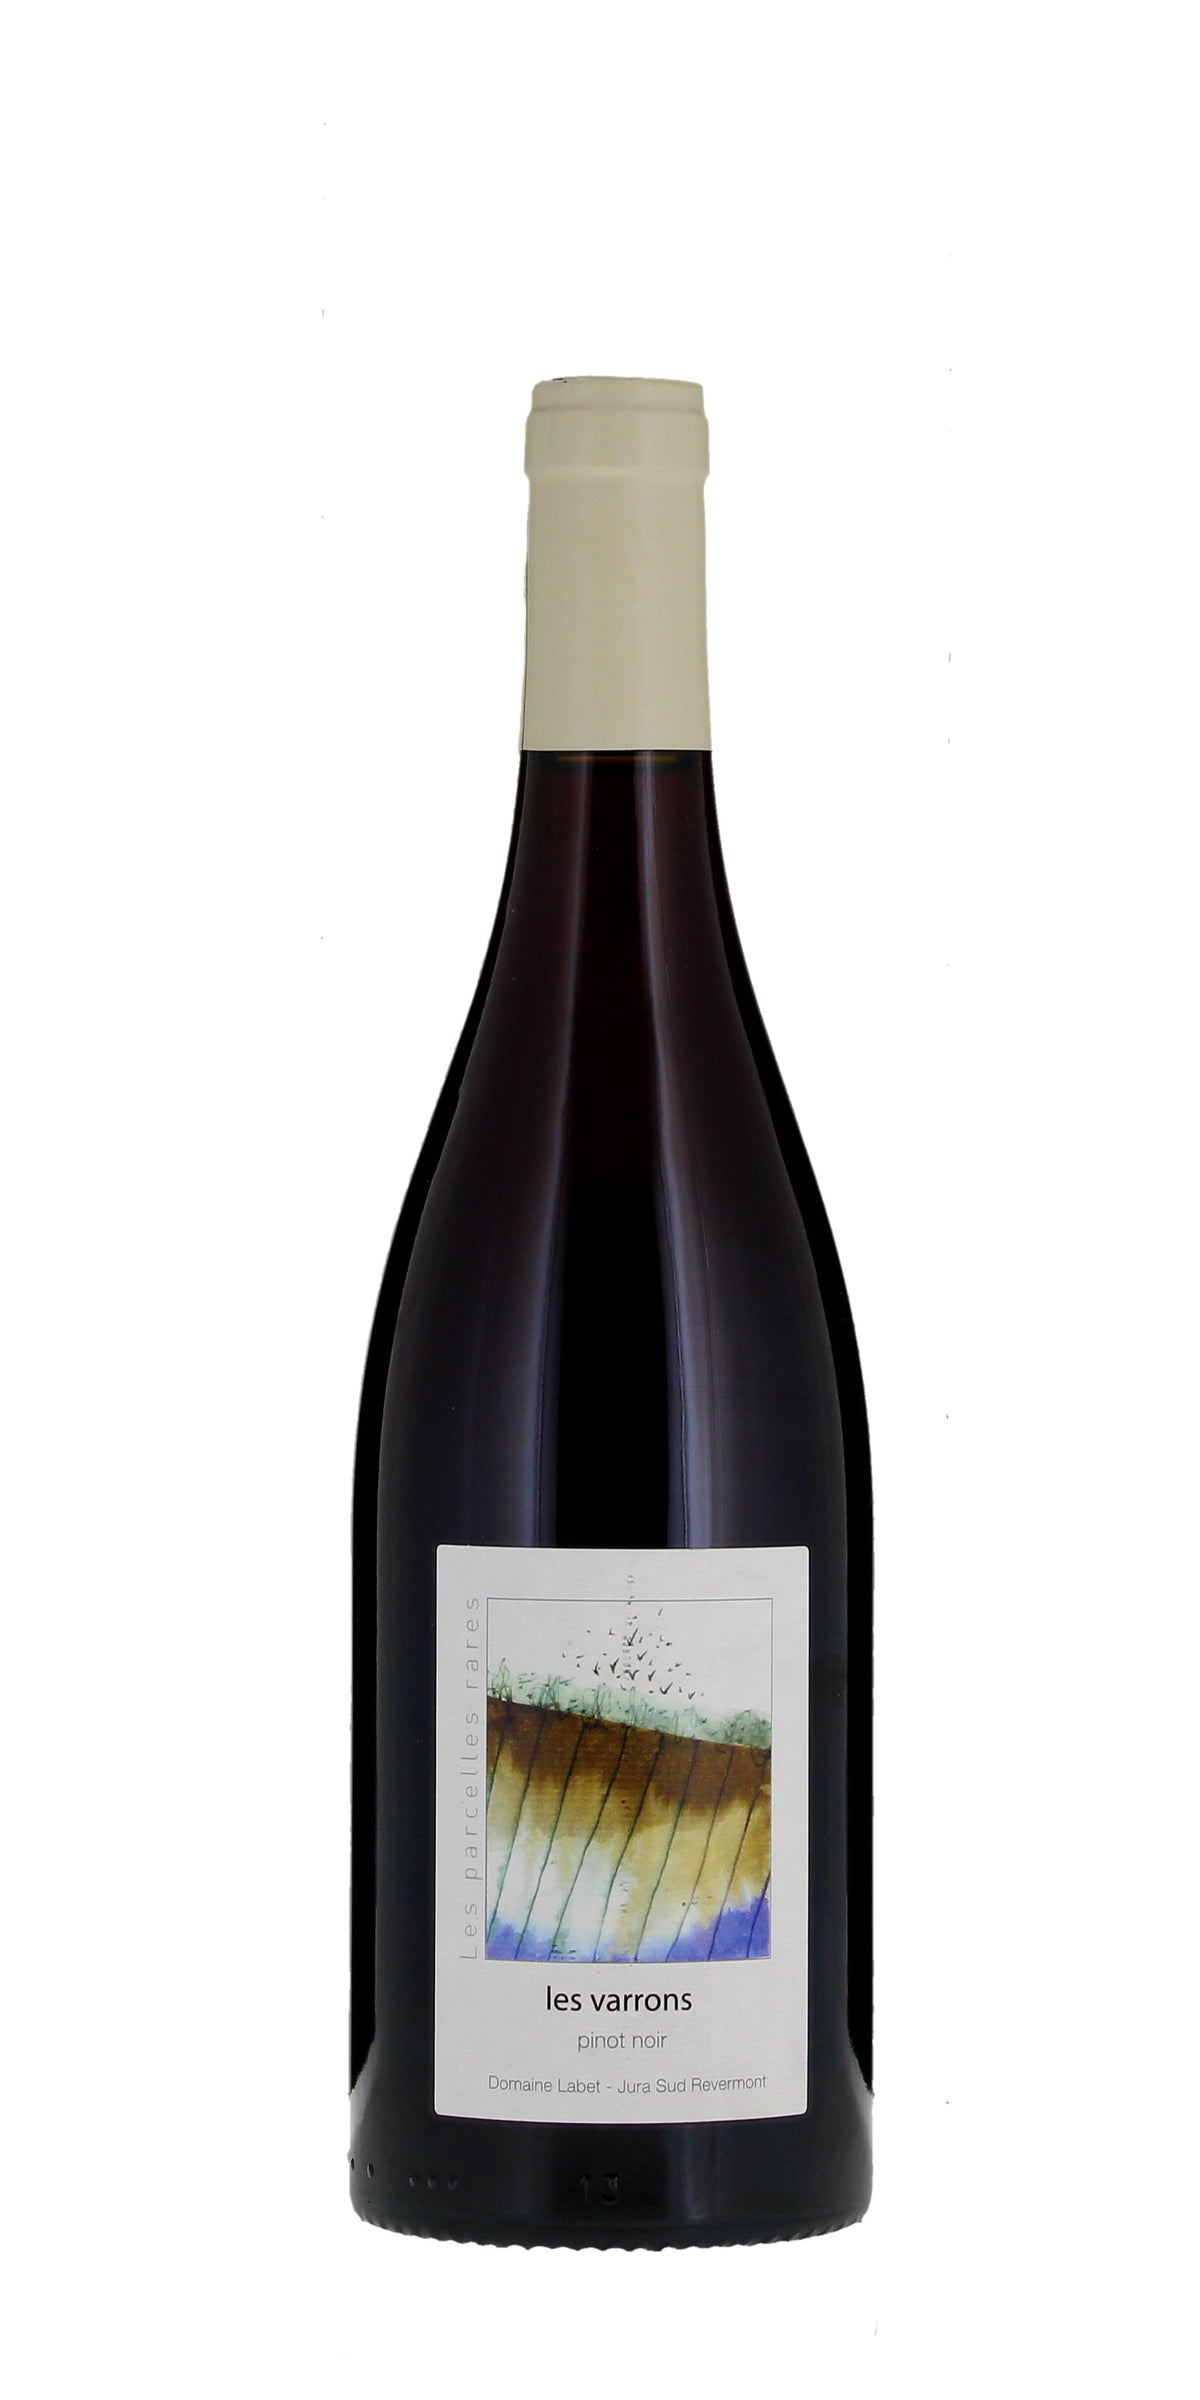 Domaine Labet Les Varrons Pinot Noir, Cotes du Jura 2019